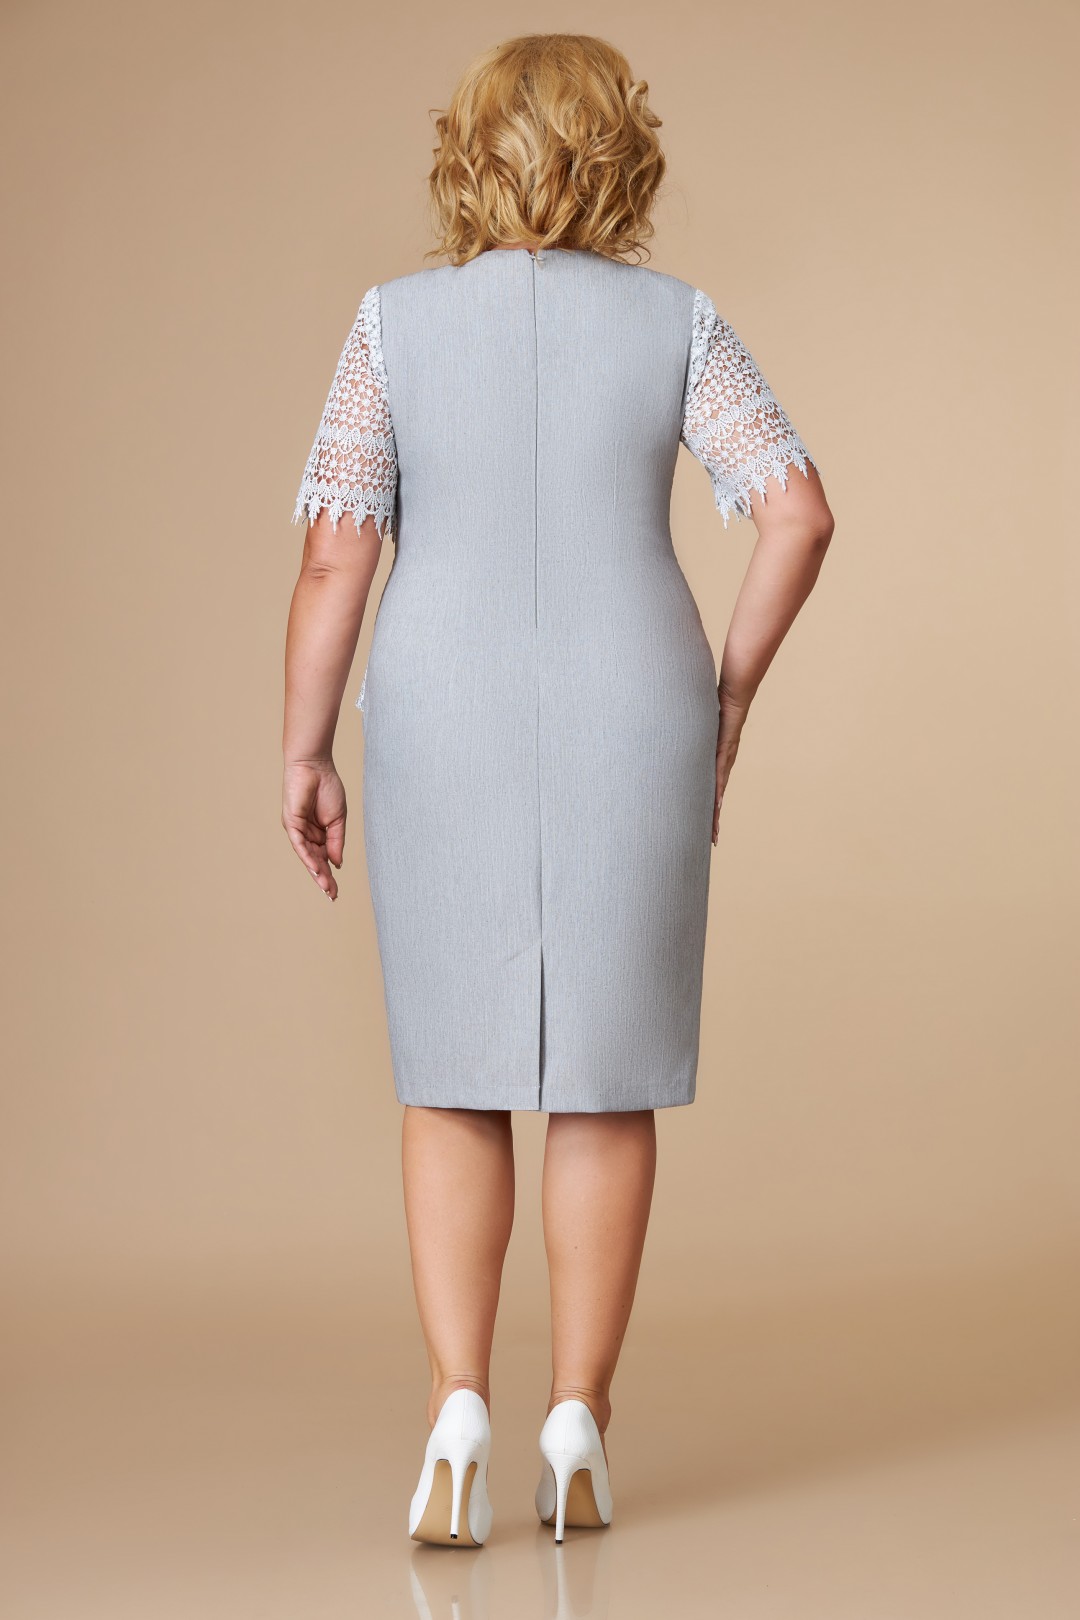 Платье Светлана-Стиль 1077.01 серый